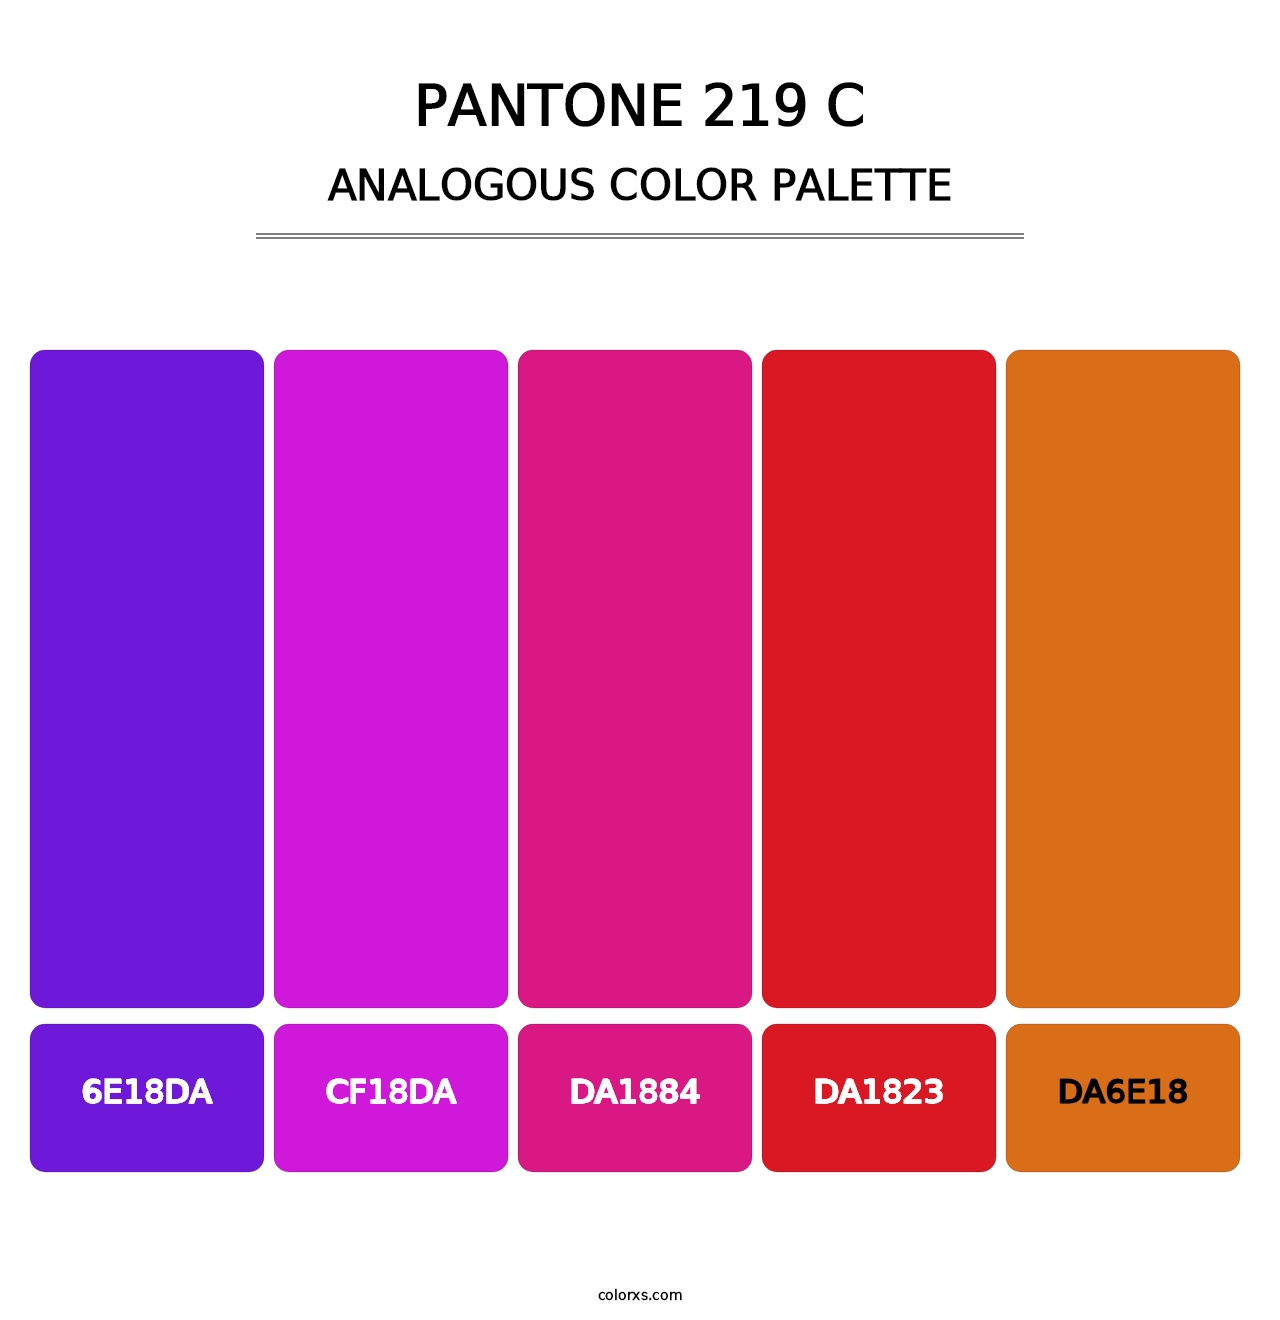 PANTONE 219 C - Analogous Color Palette